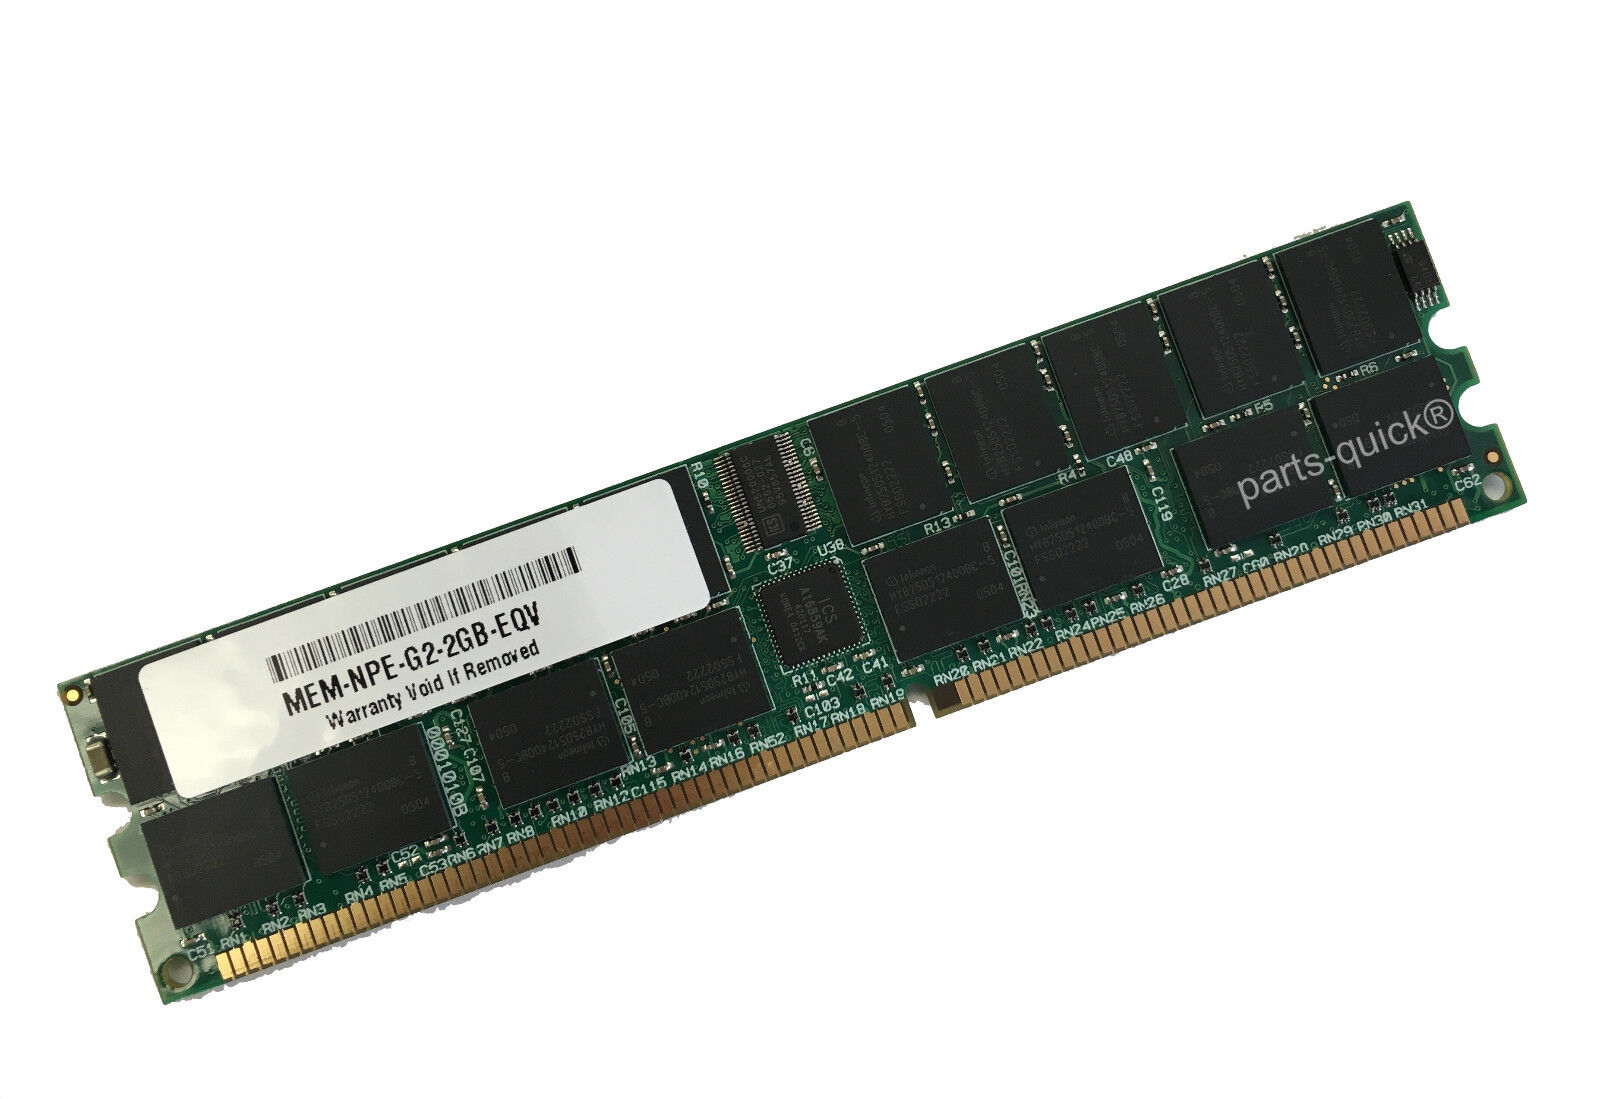 MEM-NPE-G2-2GB= 2GB Main Memory for Cisco 7200 NPE-G2